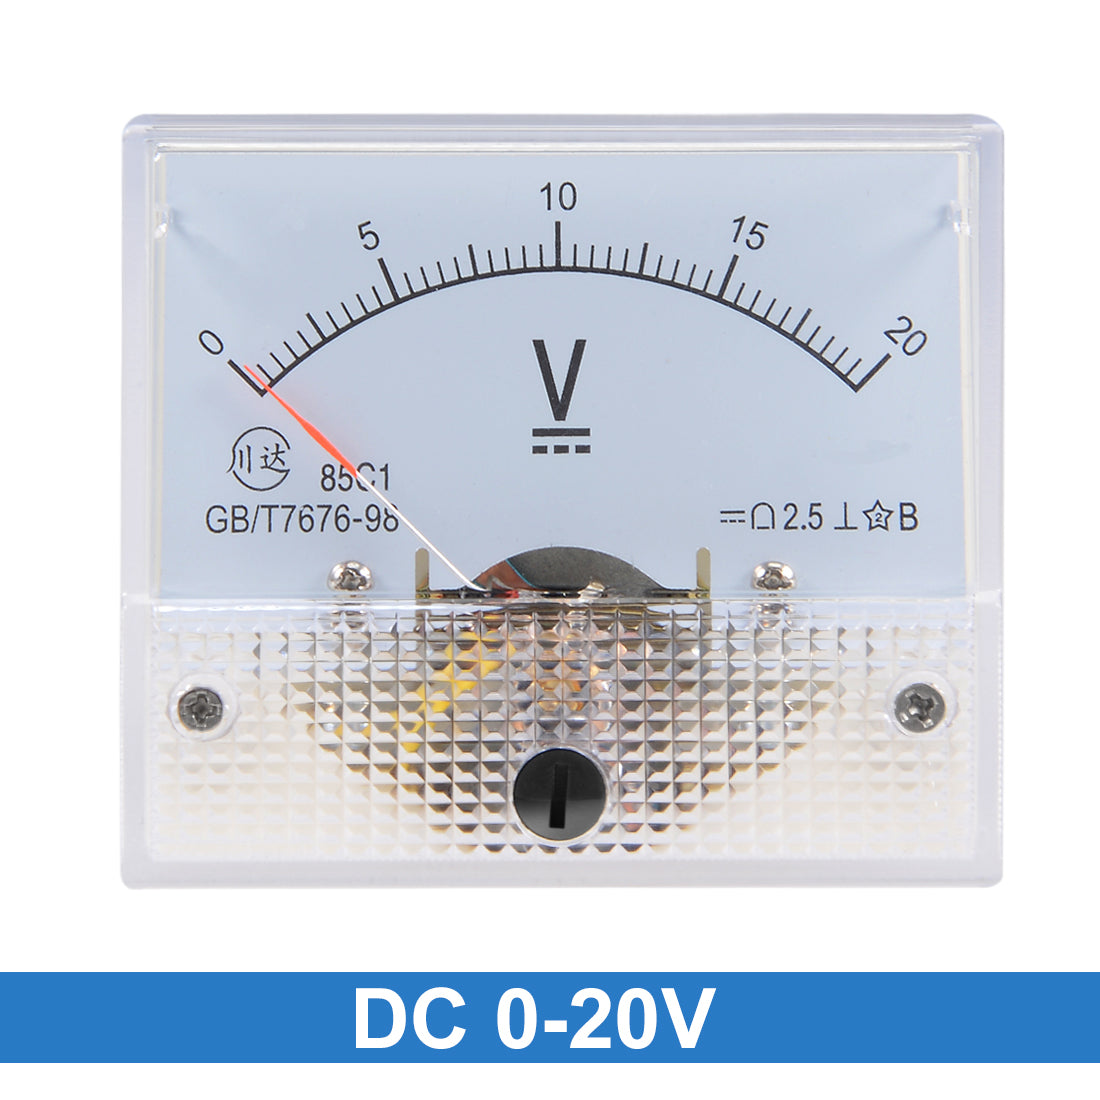 uxcell Uxcell DC 0-20V Analog Panel Voltage Gauge Volt Meter 85C1 2.5% Error Margin